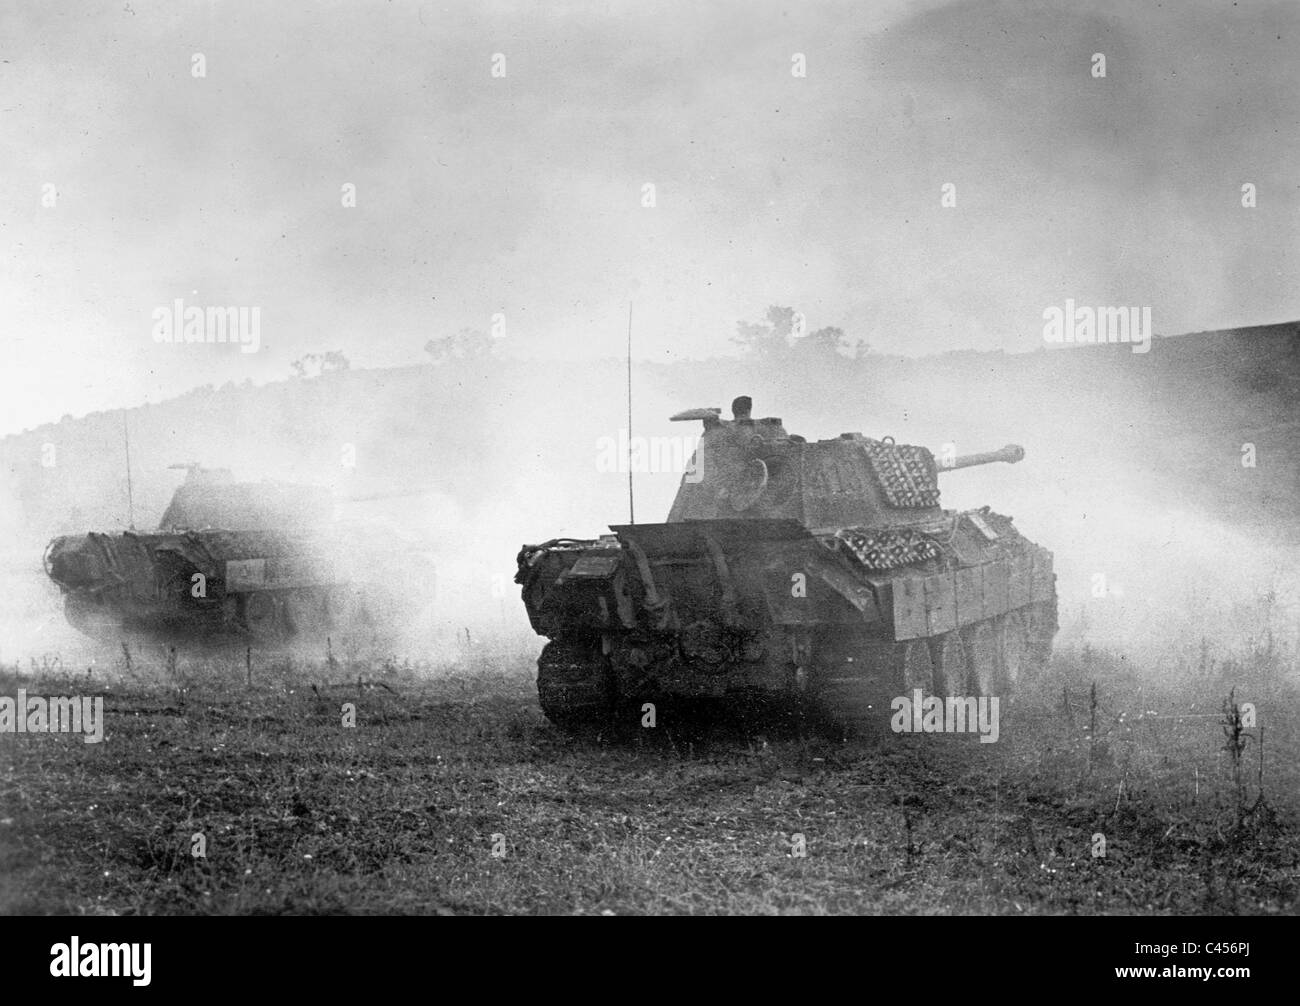 Ss tanks. 12 Танковая дивизия вермахта. 12-Я танковая дивизия СС «Гитлерюгенд». Танковая дивизия Гитлерюгенд. Пантера дивизии Гитлерюгенд.